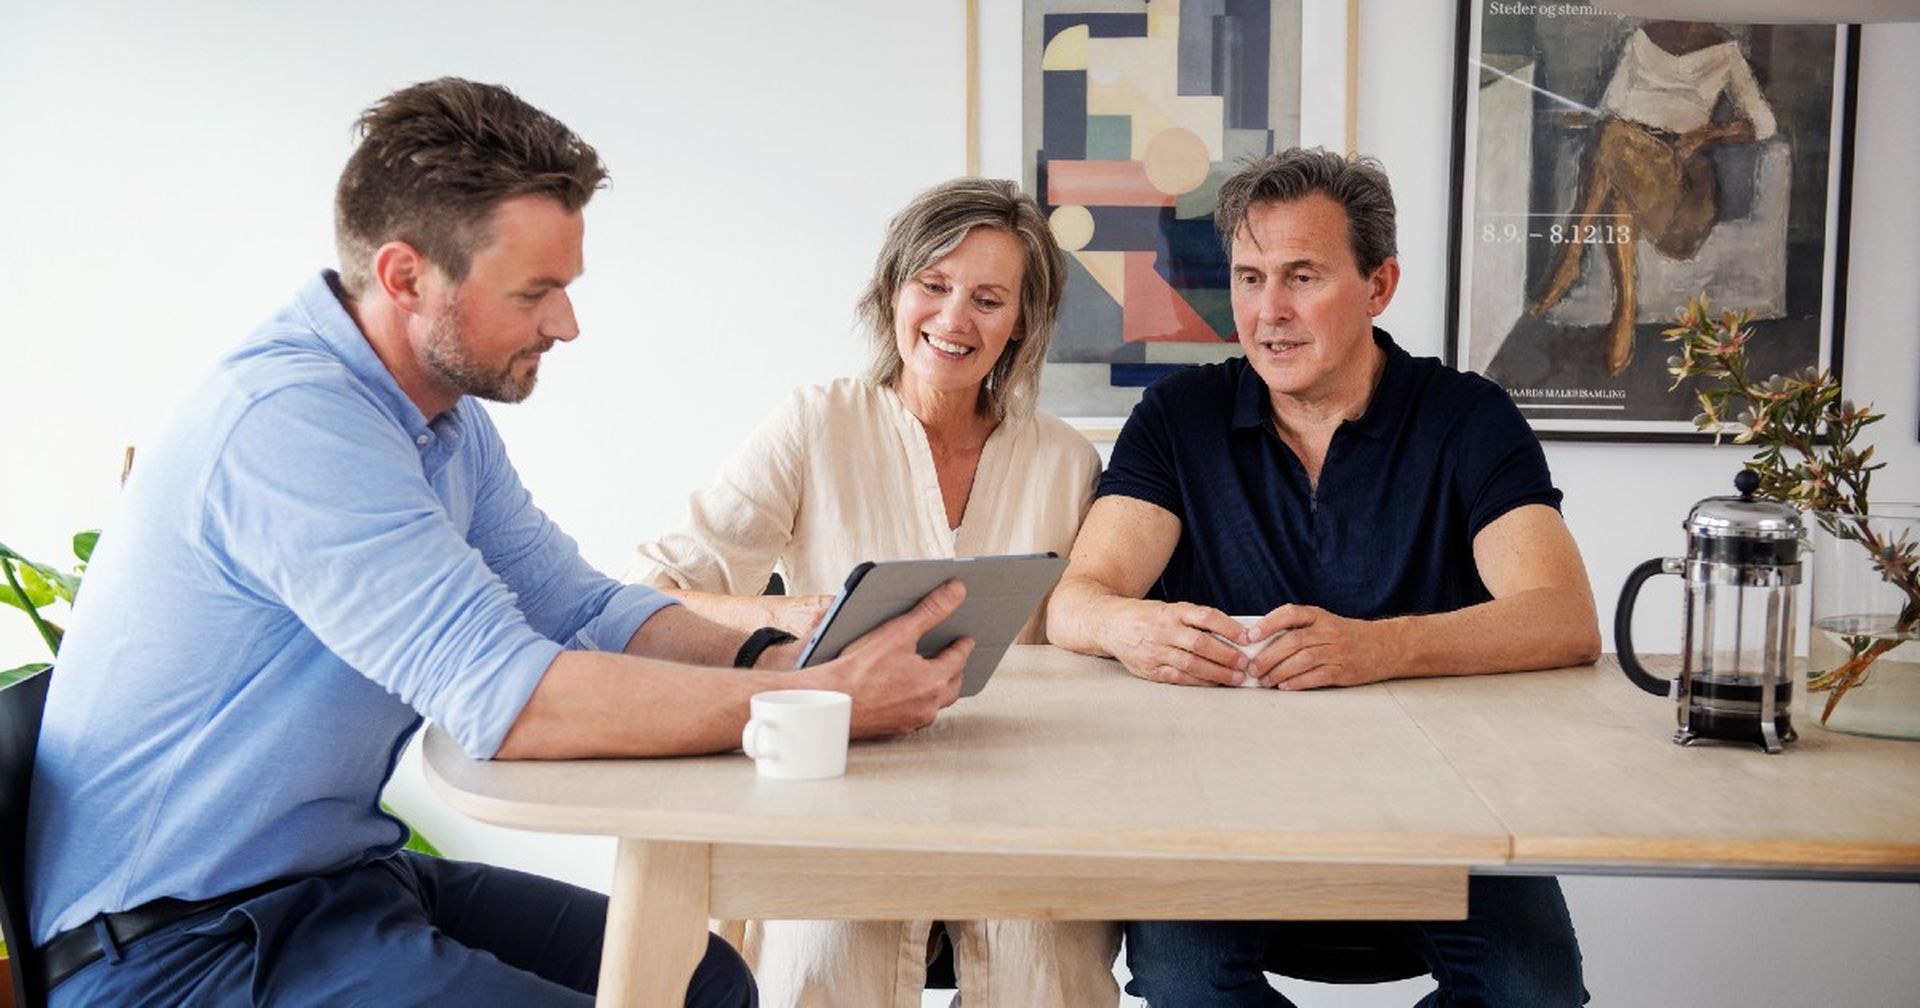 Par sitter sammen ved et bord i møte med en eiendomsmegler som viser frem noe på en tablet. Foto.